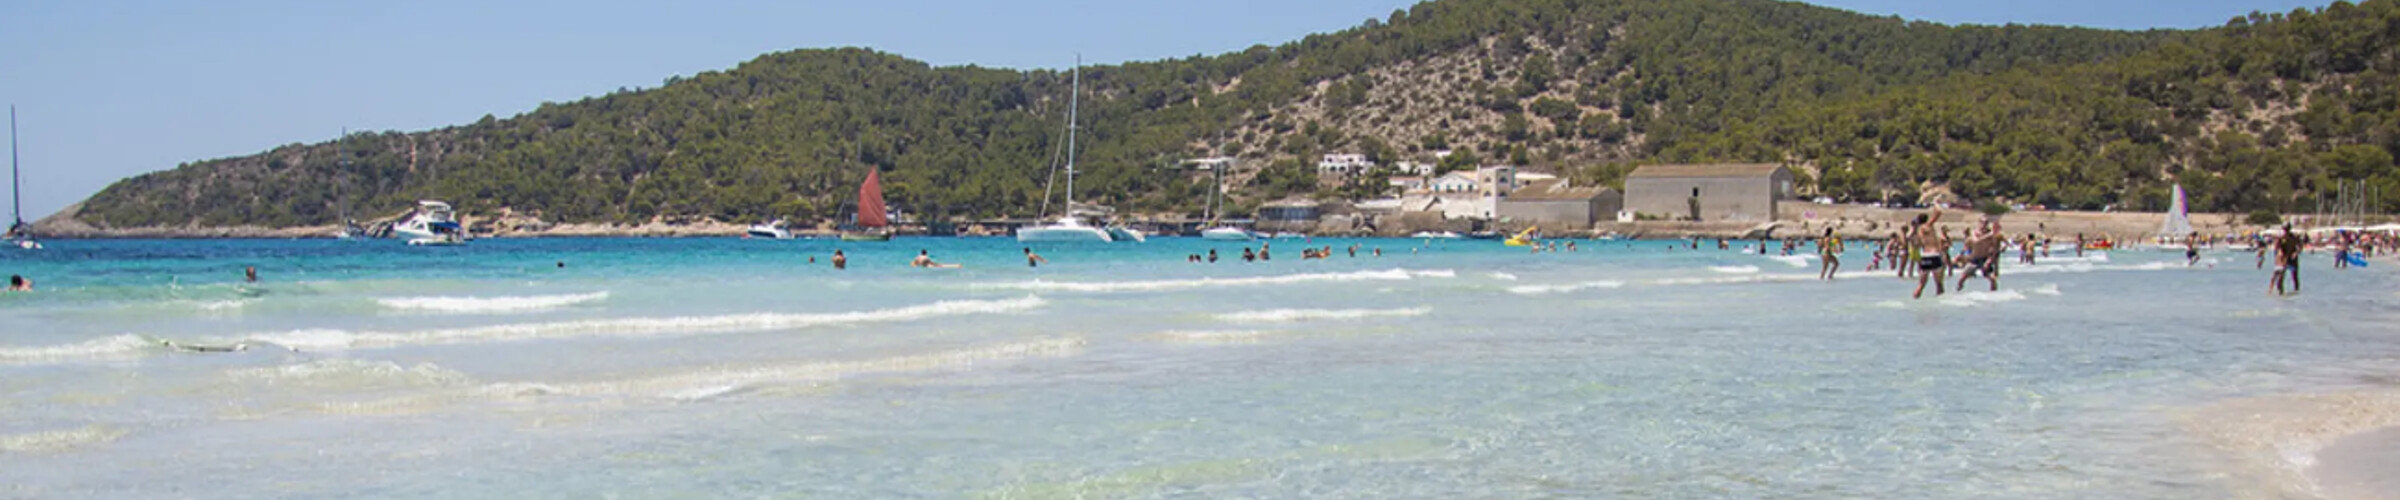 5 Best Beaches in Ibiza